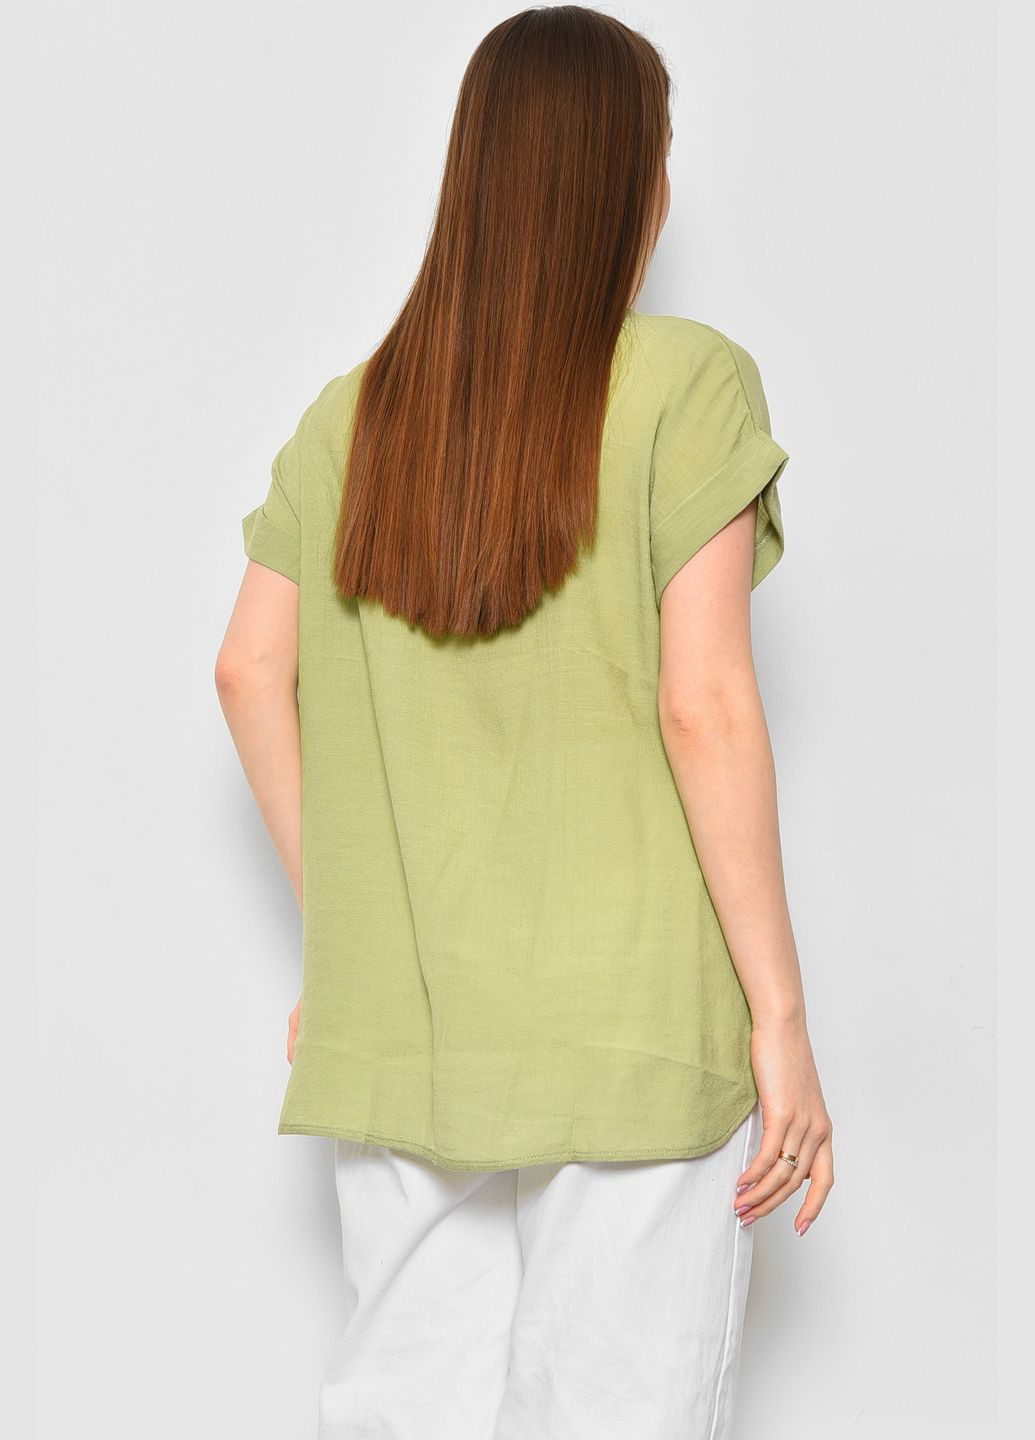 Оливковая летняя футболка женская полубатальная оливкового цвета Let's Shop